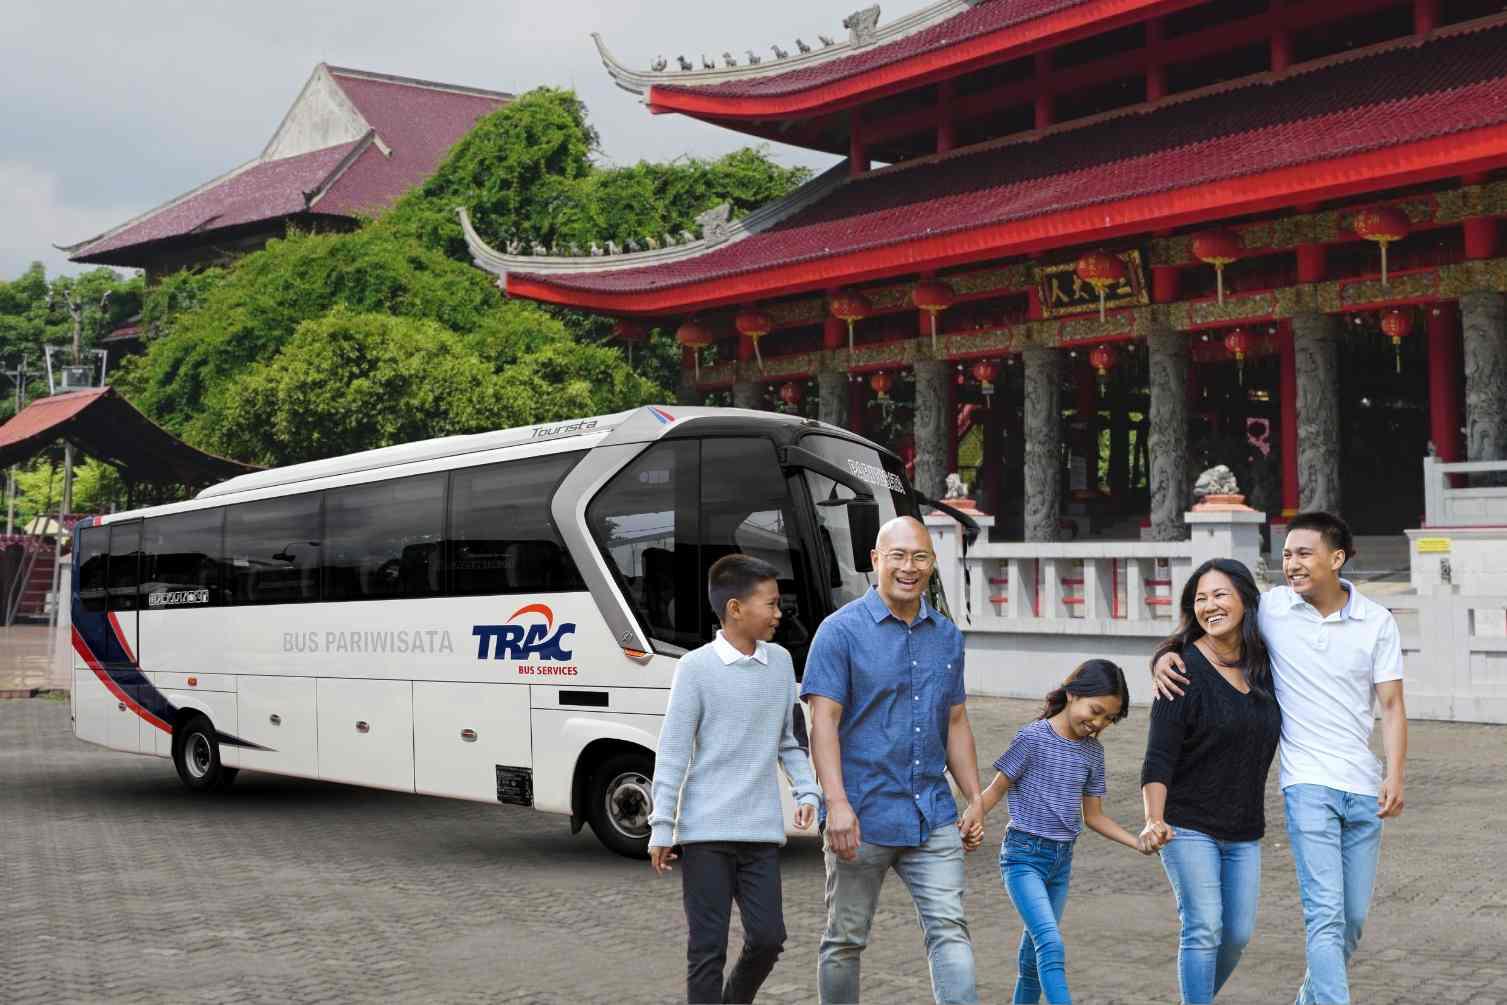 08 Tips Berlibur Ke Destinasi Wisata Imlek Bareng Keluarga Dengan Sewa Bus.jpg